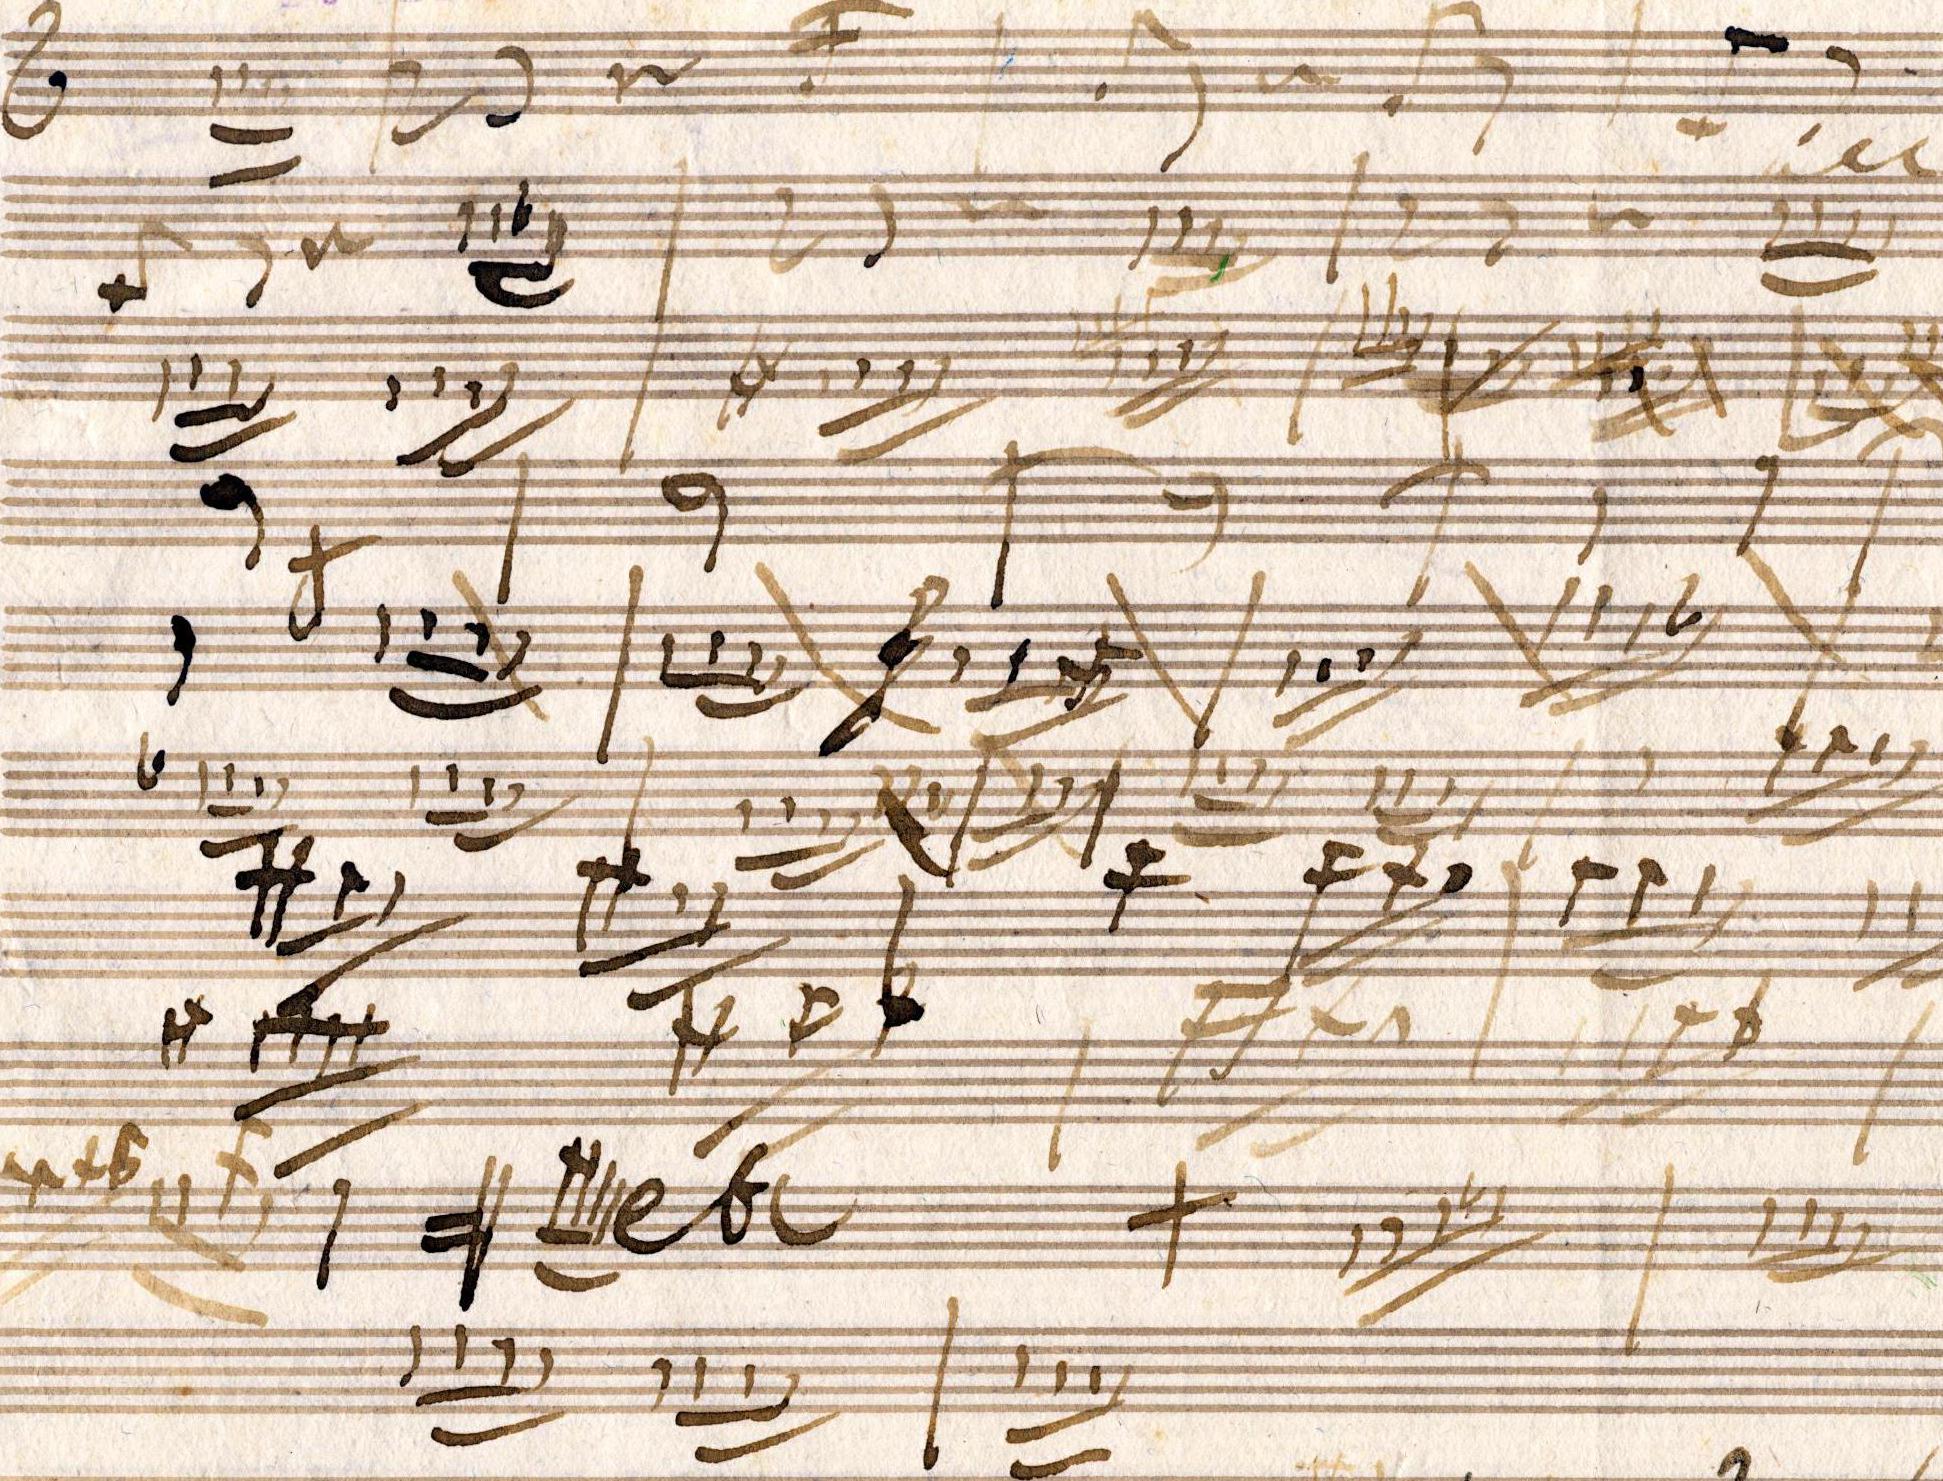 L. van Beethoven, frammento autografo dal II quartetto op. 18